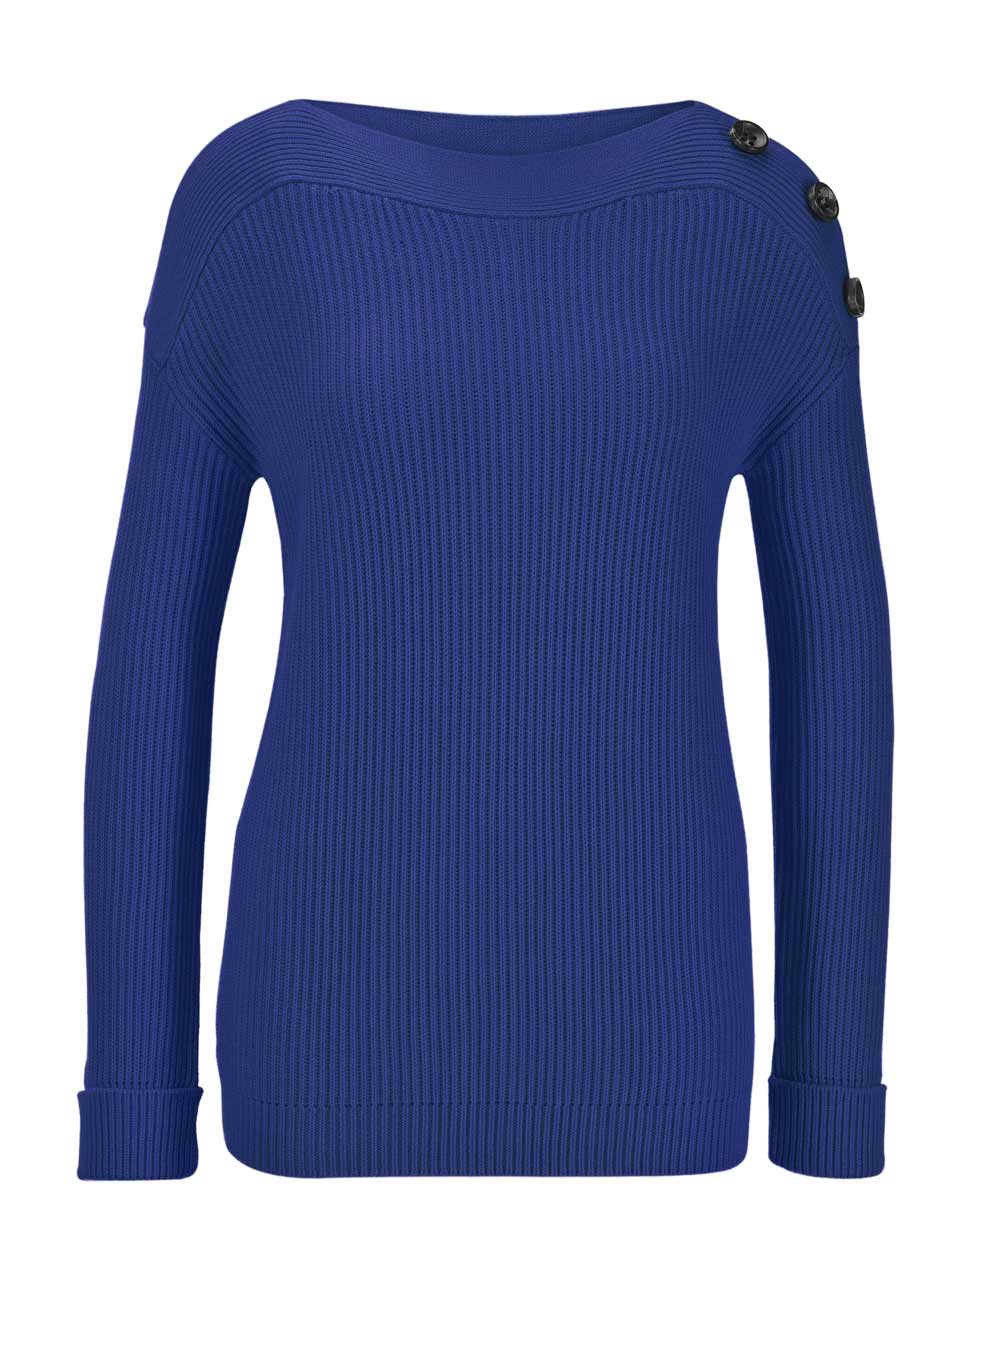 HEINE Damen U-Boot-Pullover mit Zierknöpfen, royalblau